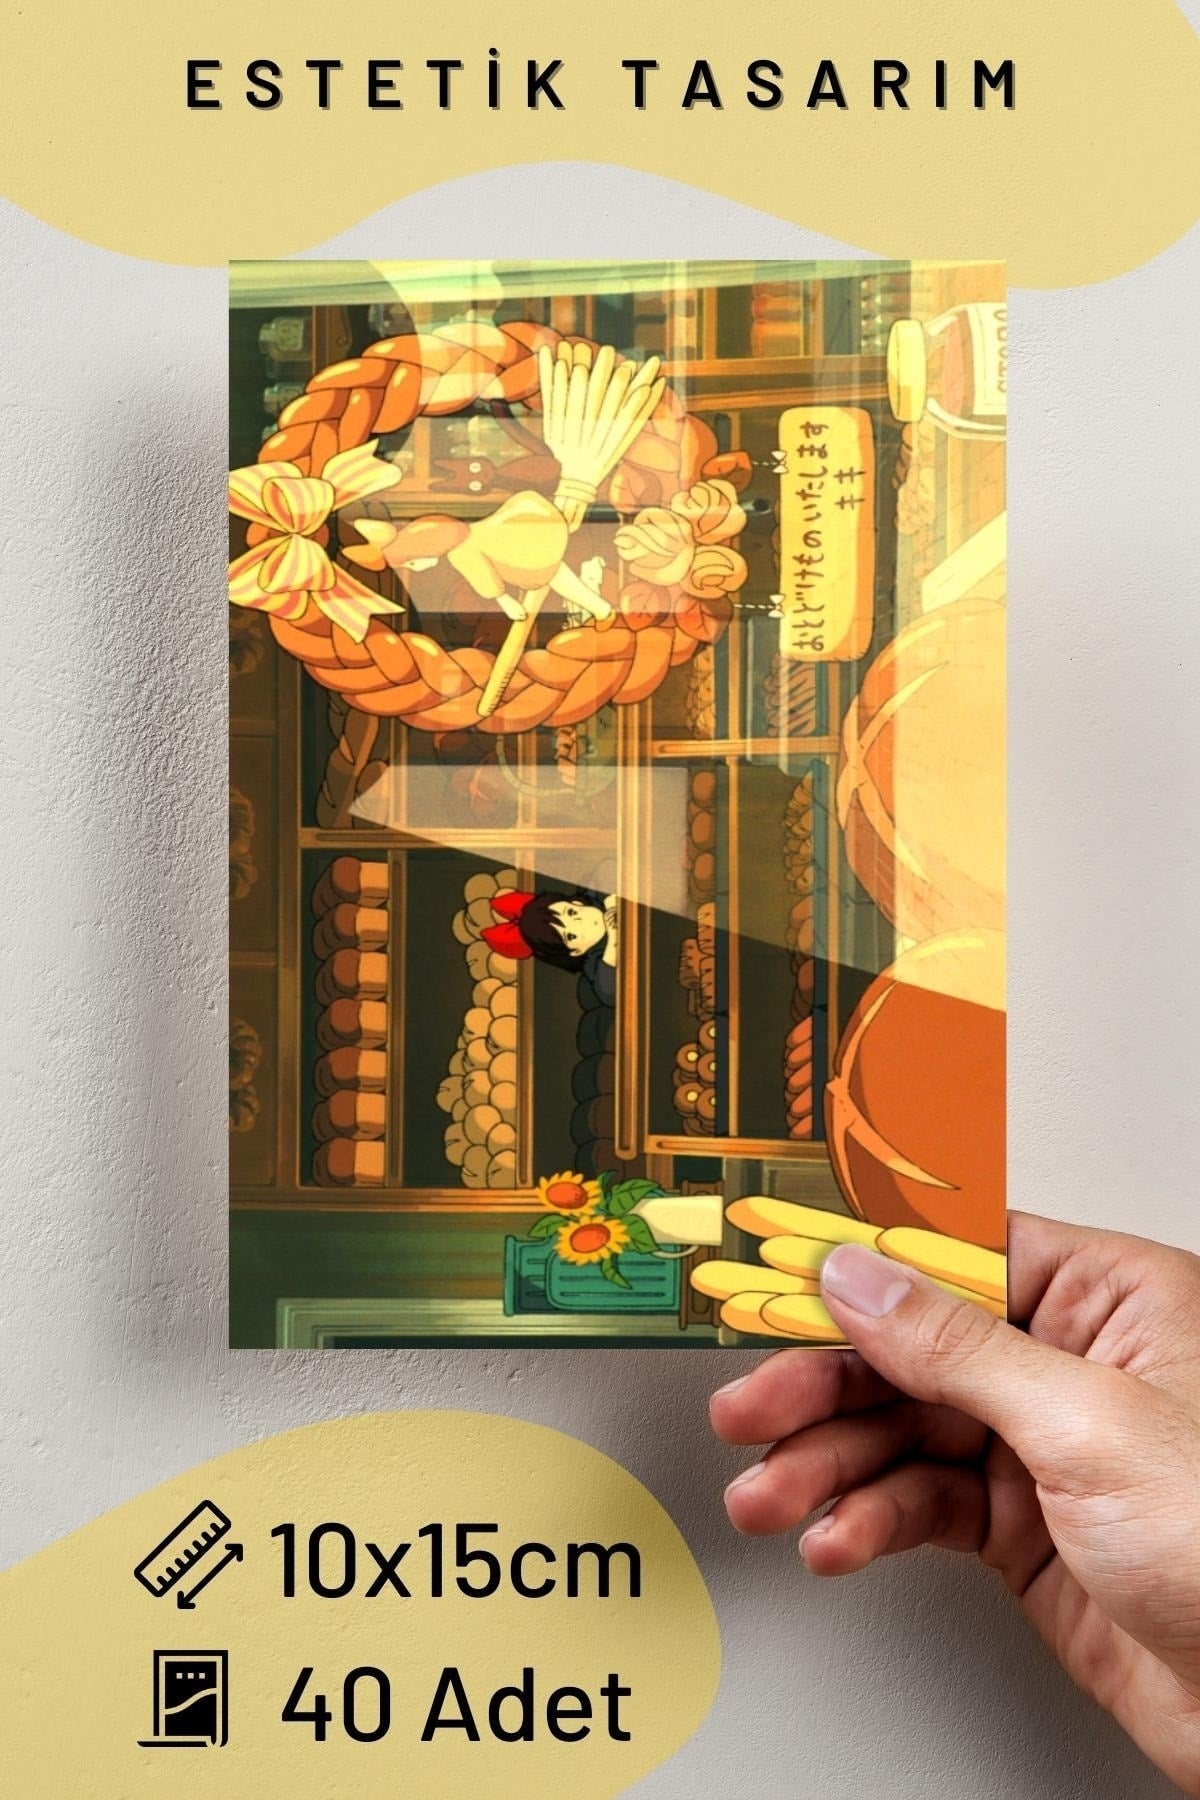 Anime Duvar Posteri Kolaj Seti - 40 Adet - Arkası Yapışkanlı Poster Seti - 10cm*15cm - Kutulu Set